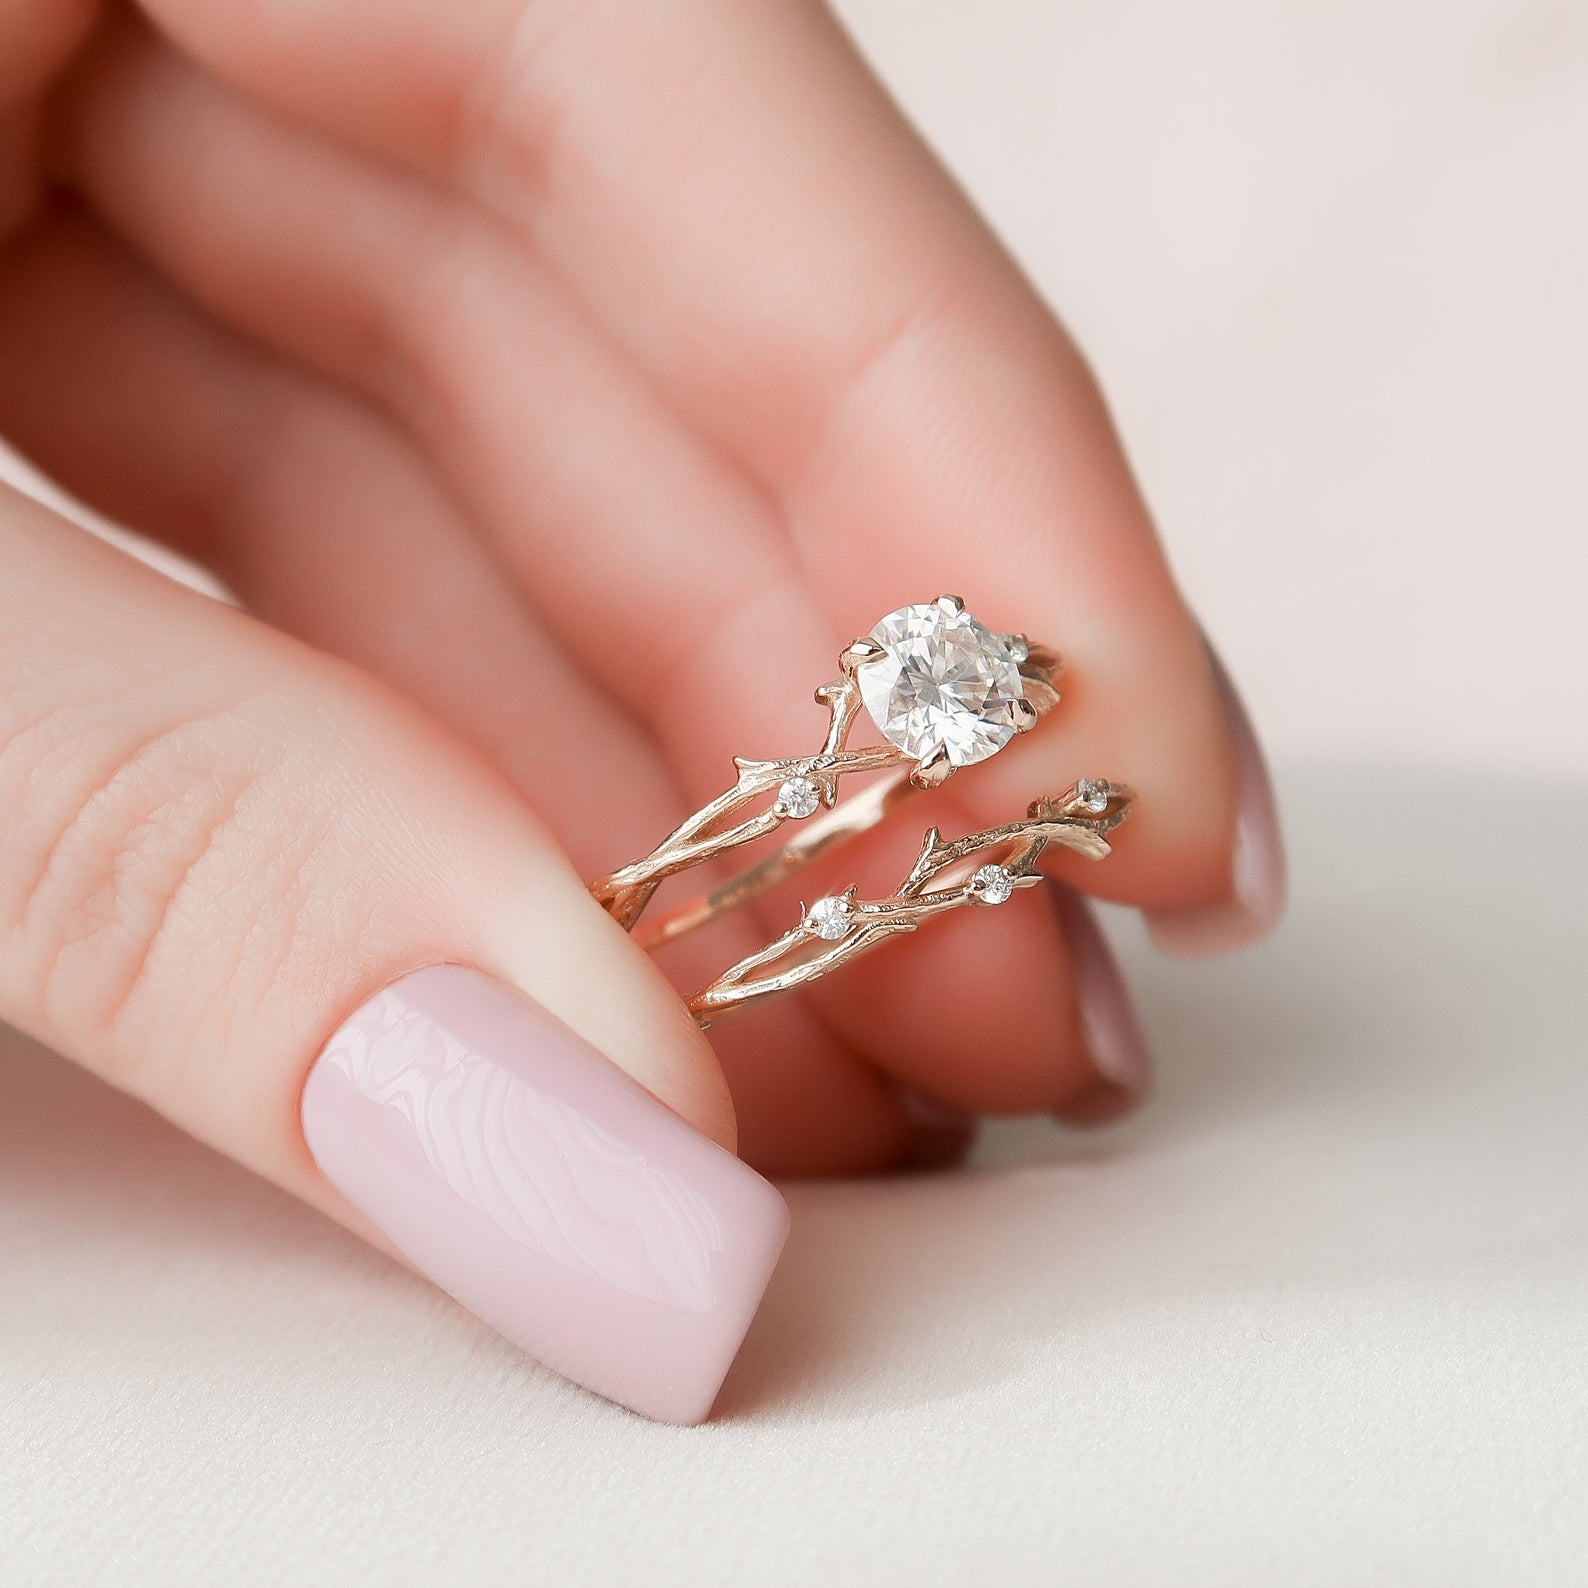 Diamond Engagement Ring, Minimalist Engagement Ring, Dainty Engagement Ring,  Small Diamond Ring, Delicate Diamond Ring - Etsy | White gold promise ring,  Small engagement rings, Minimalist engagement ring